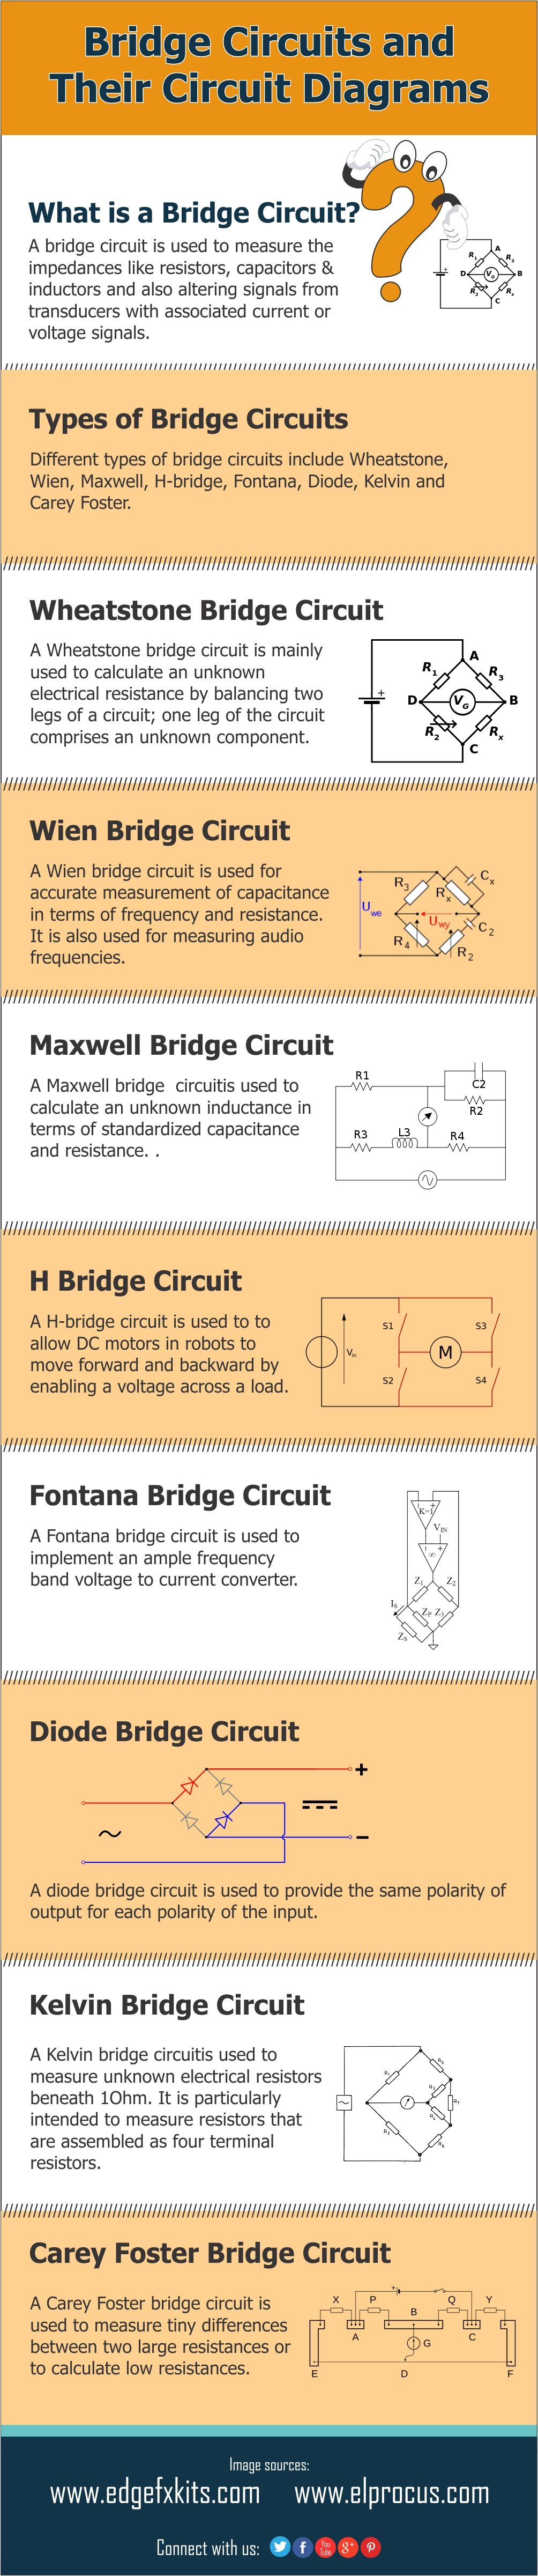 Infografía: diferentes tipos de circuitos de puente y diagramas de circuito